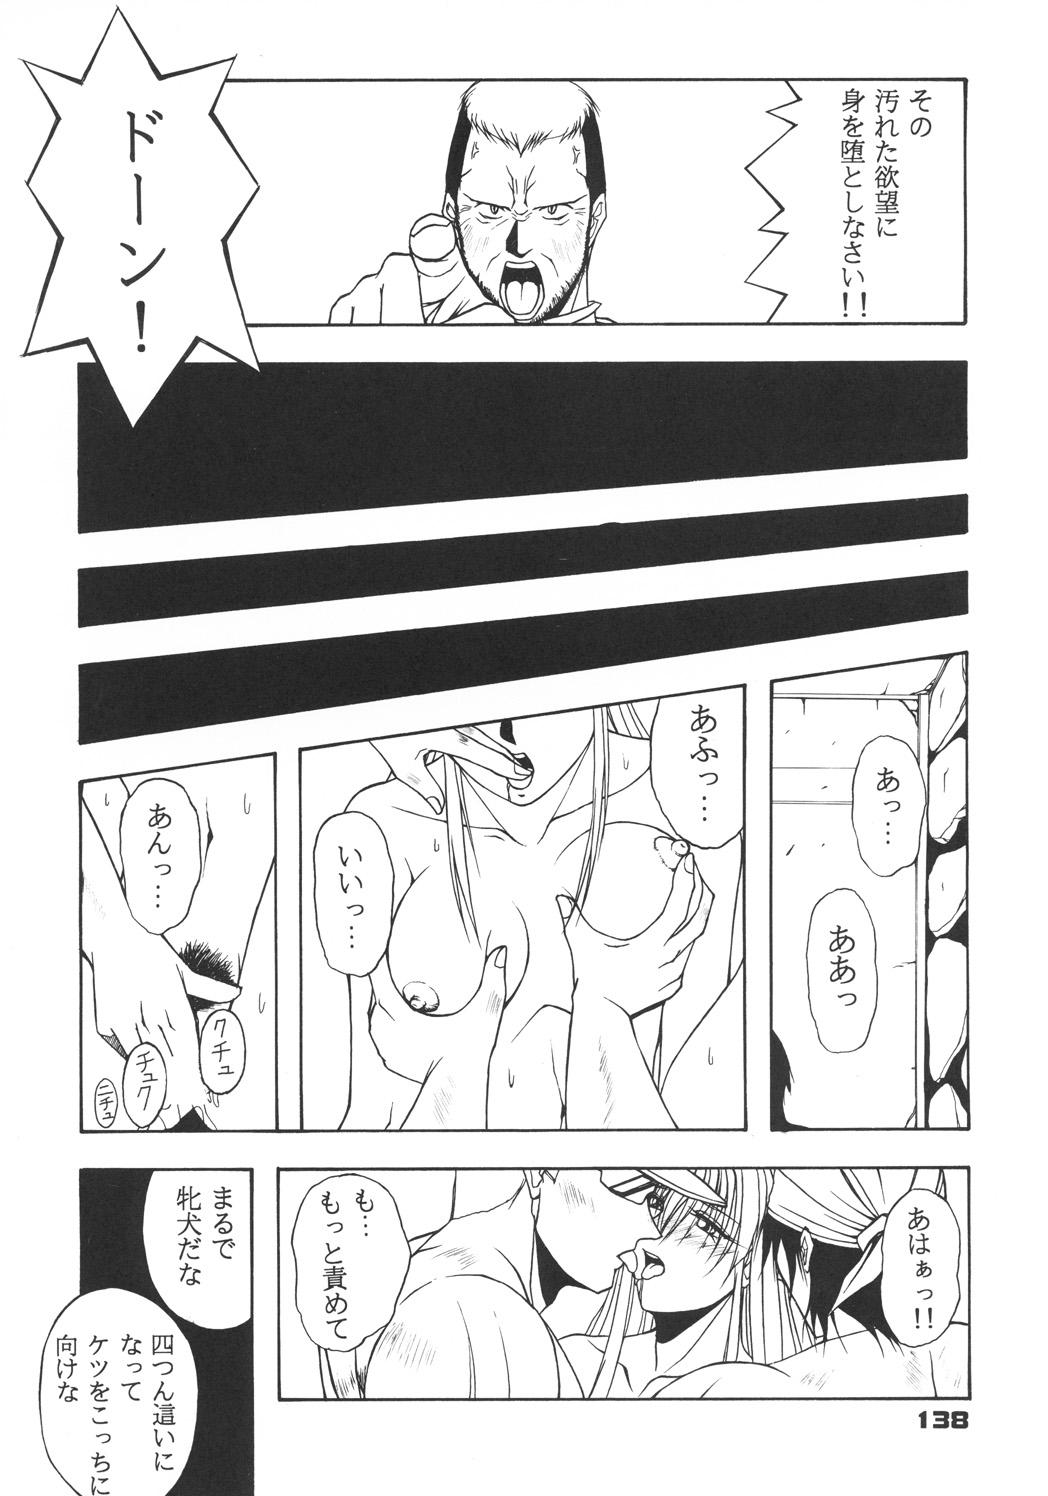 Inoue Koutarou Kojin Sakuhin Shuu 95→99 Special Edition 136